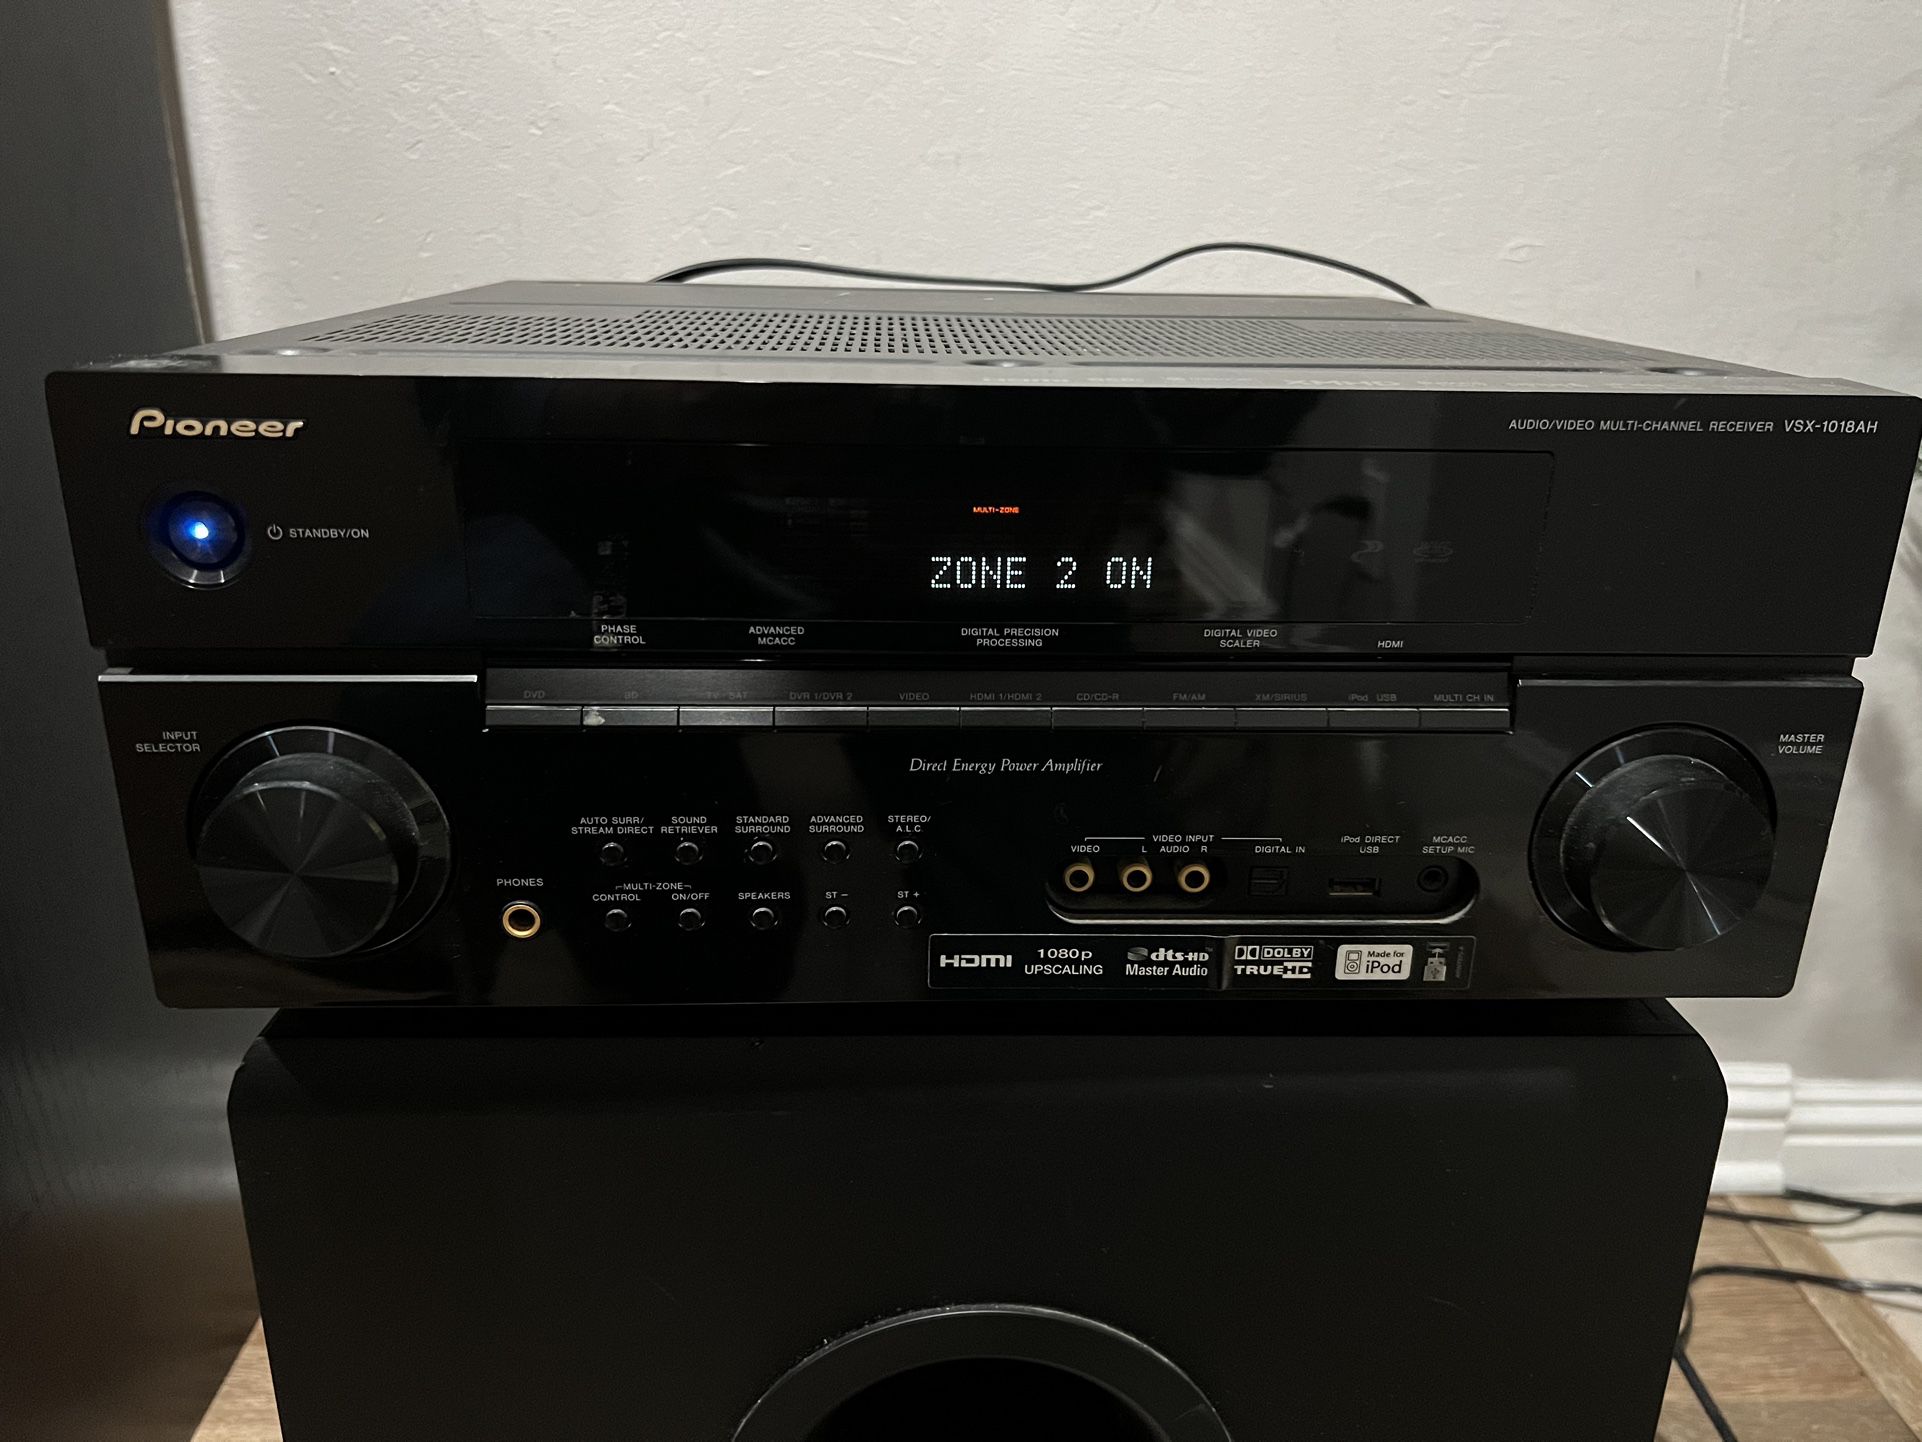 Pioneer Audio/Video Multi-Channel Receiver - VSX-1018AH-K